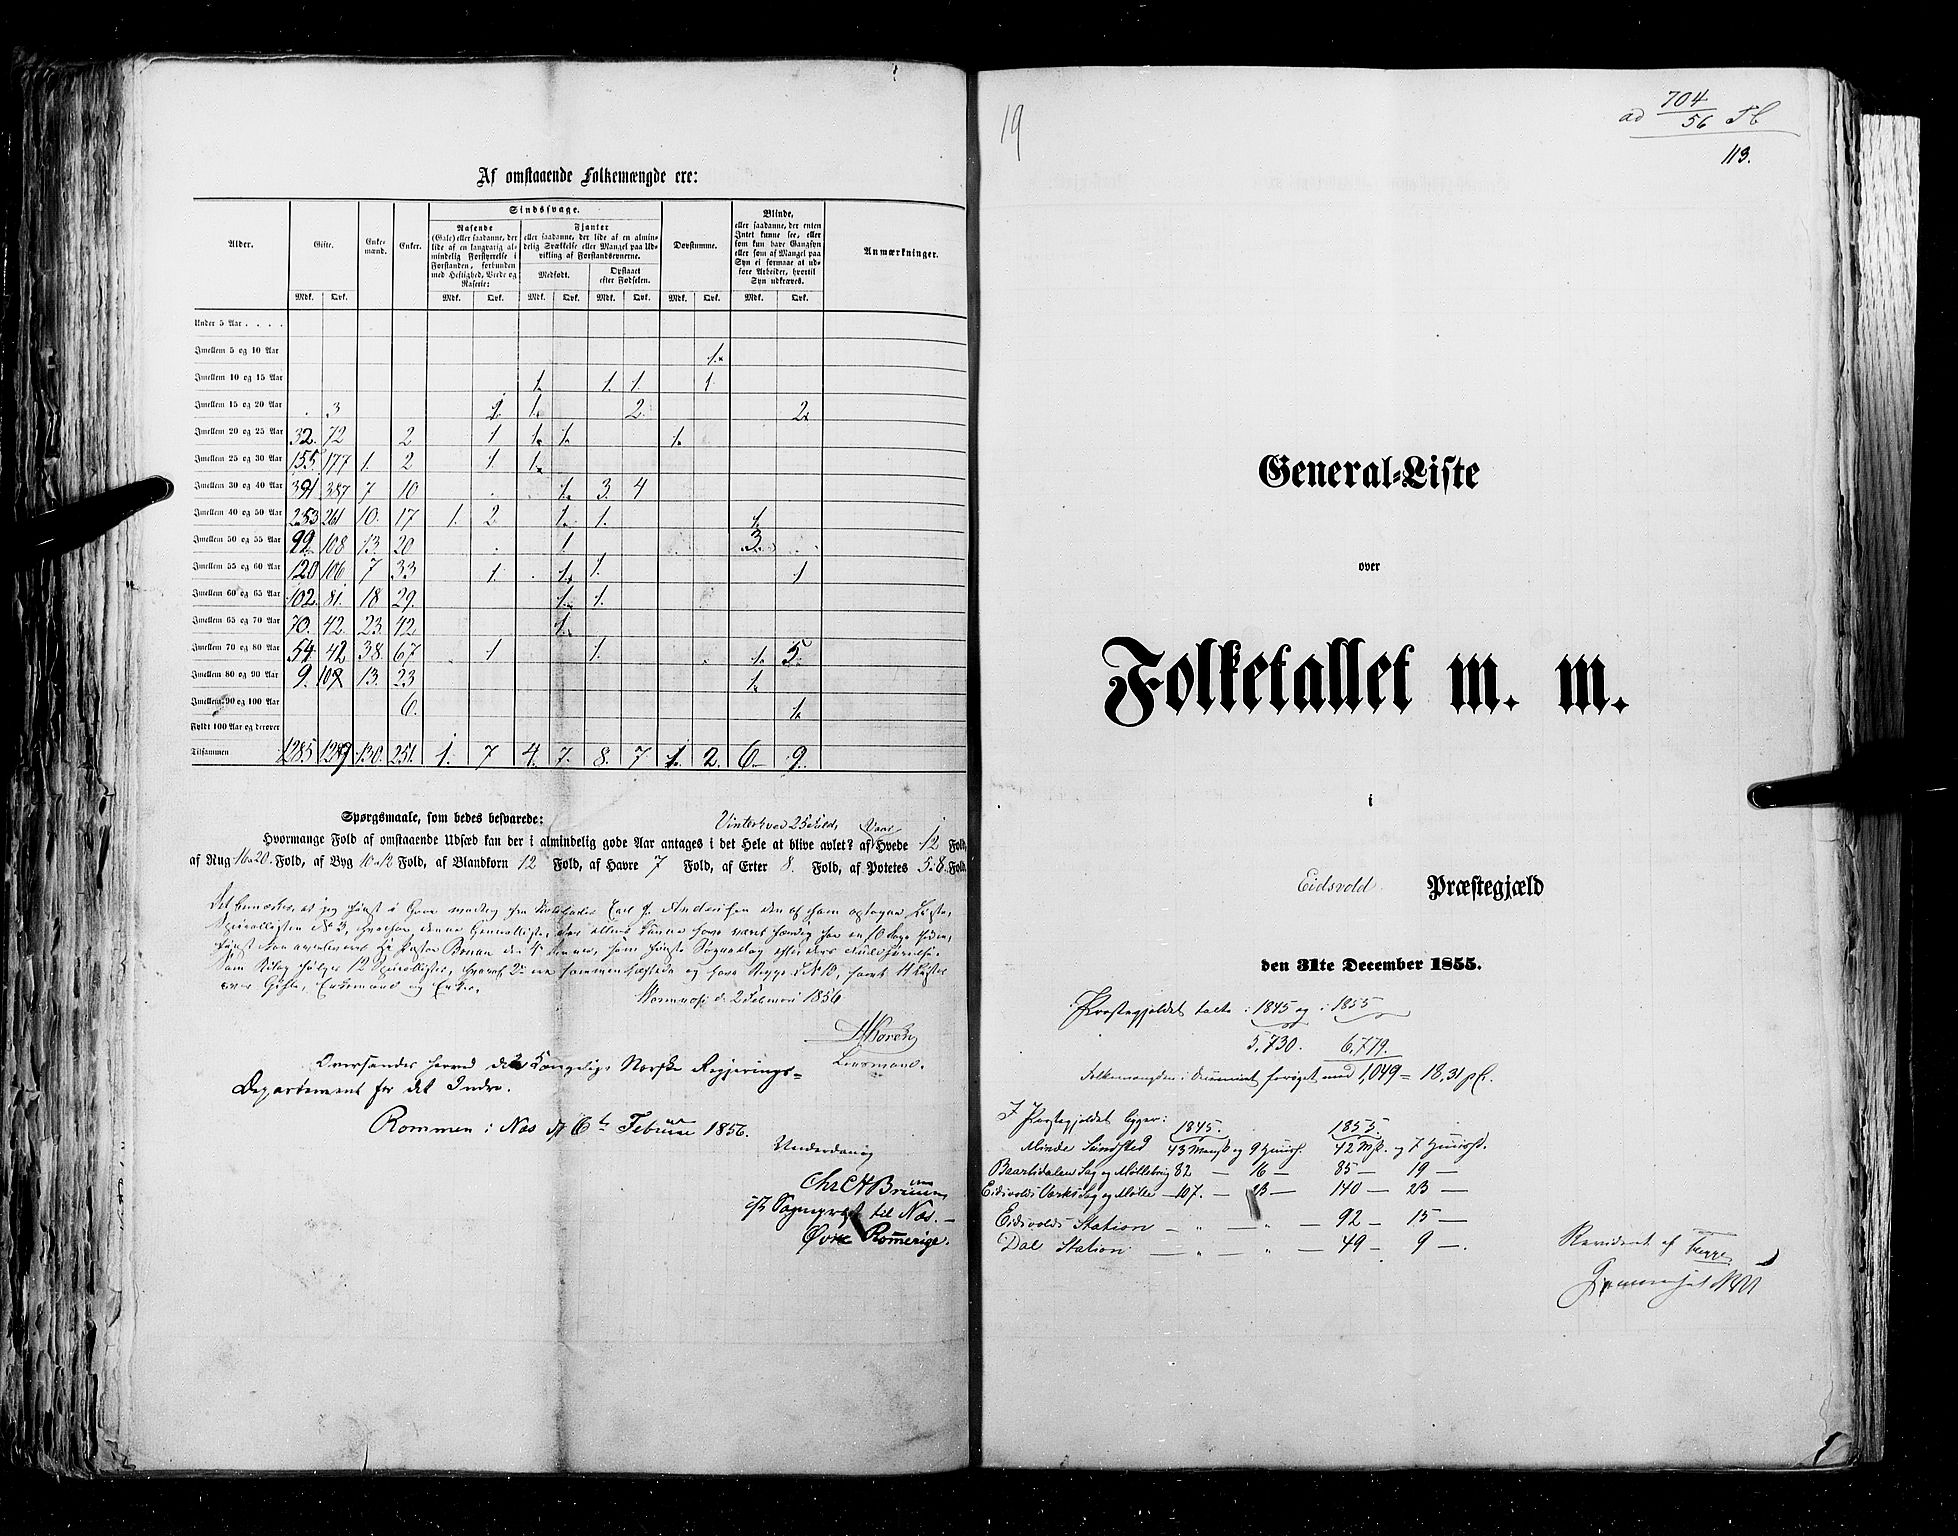 RA, Folketellingen 1855, bind 1: Akershus amt, Smålenenes amt og Hedemarken amt, 1855, s. 113